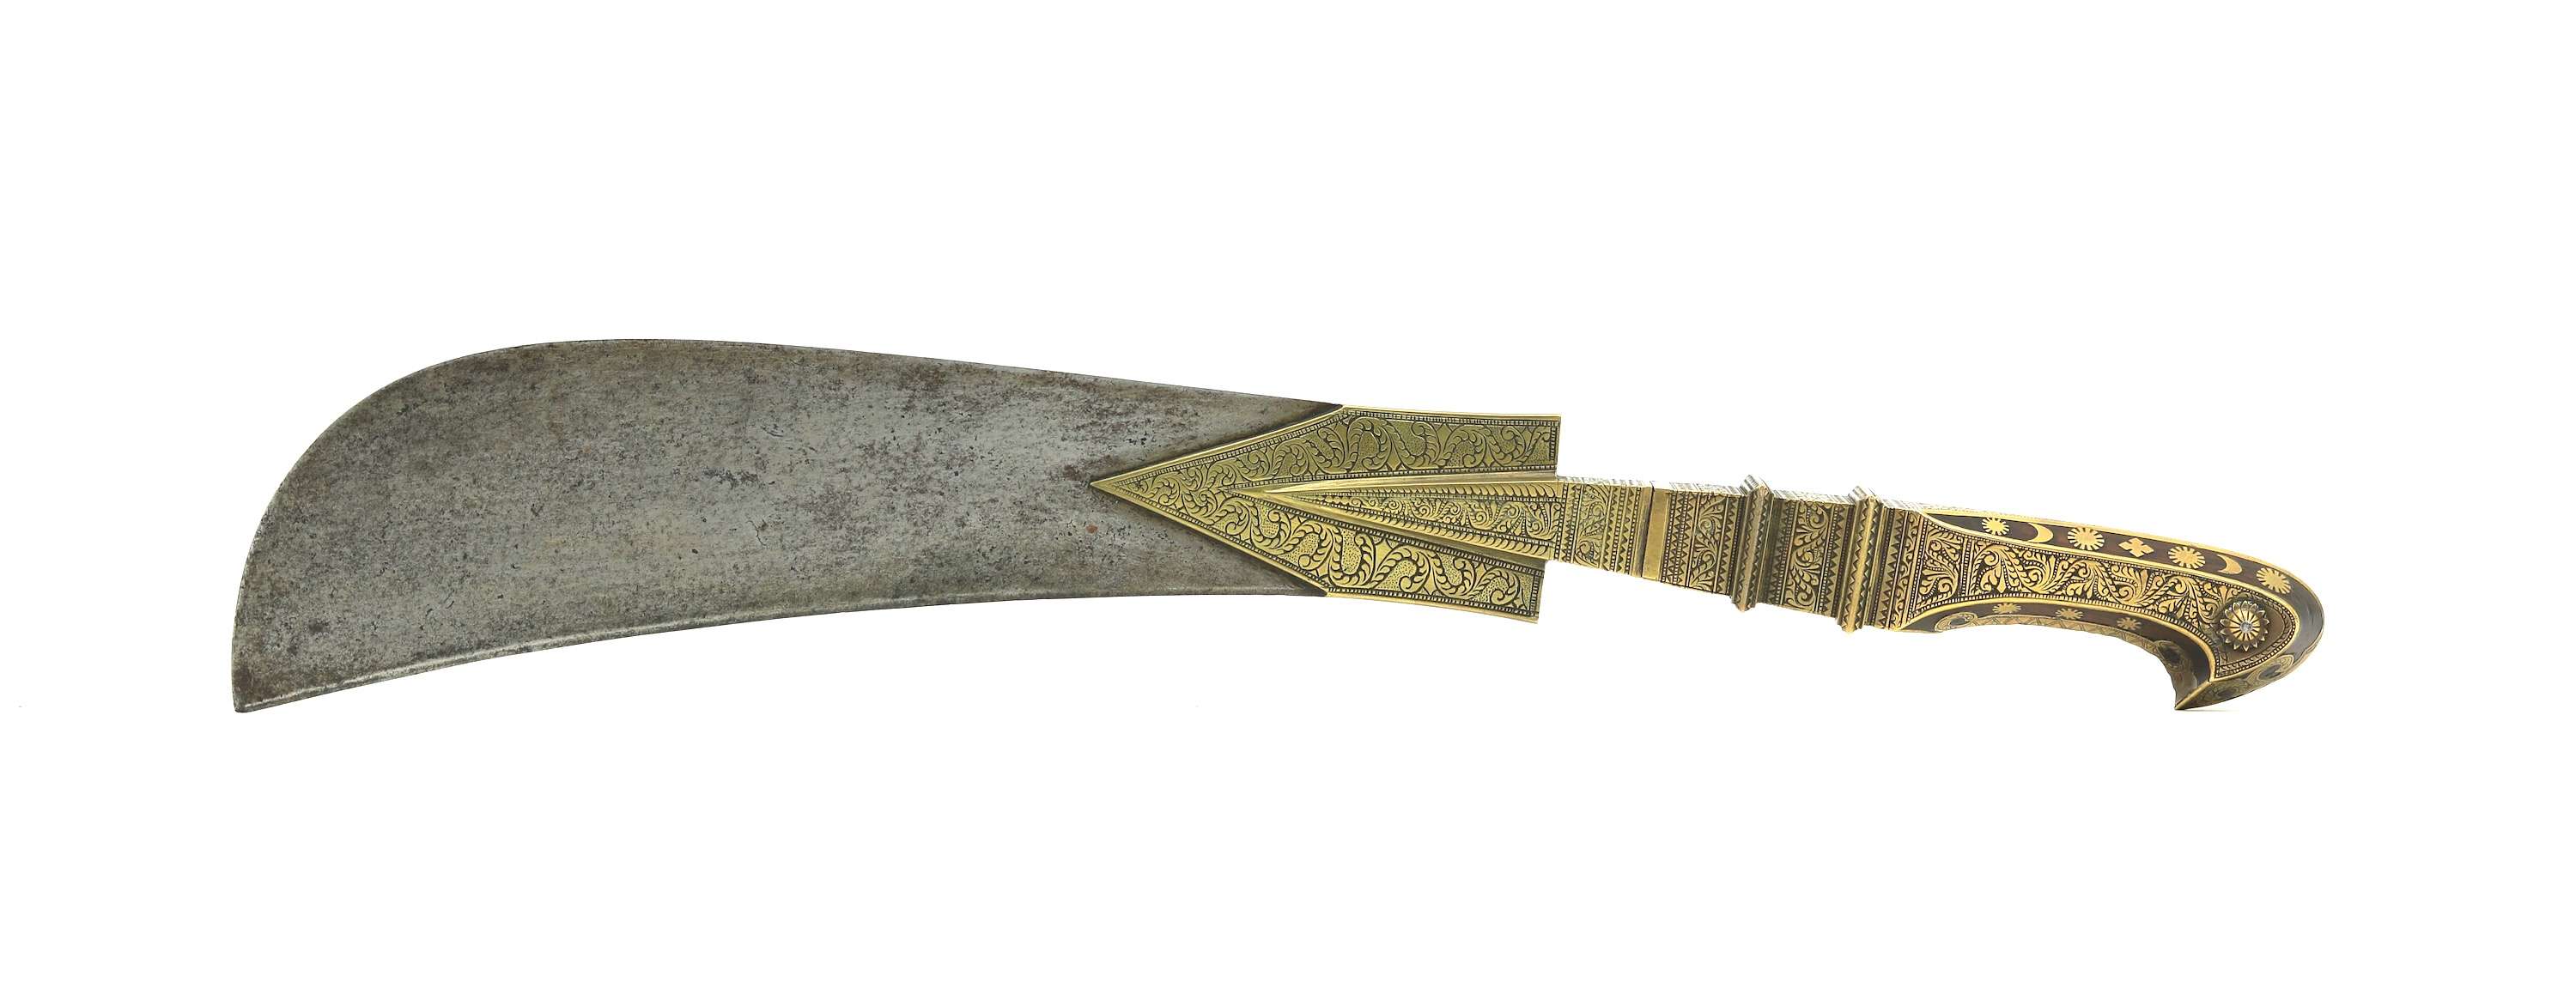 Malabar coast Moplah sword